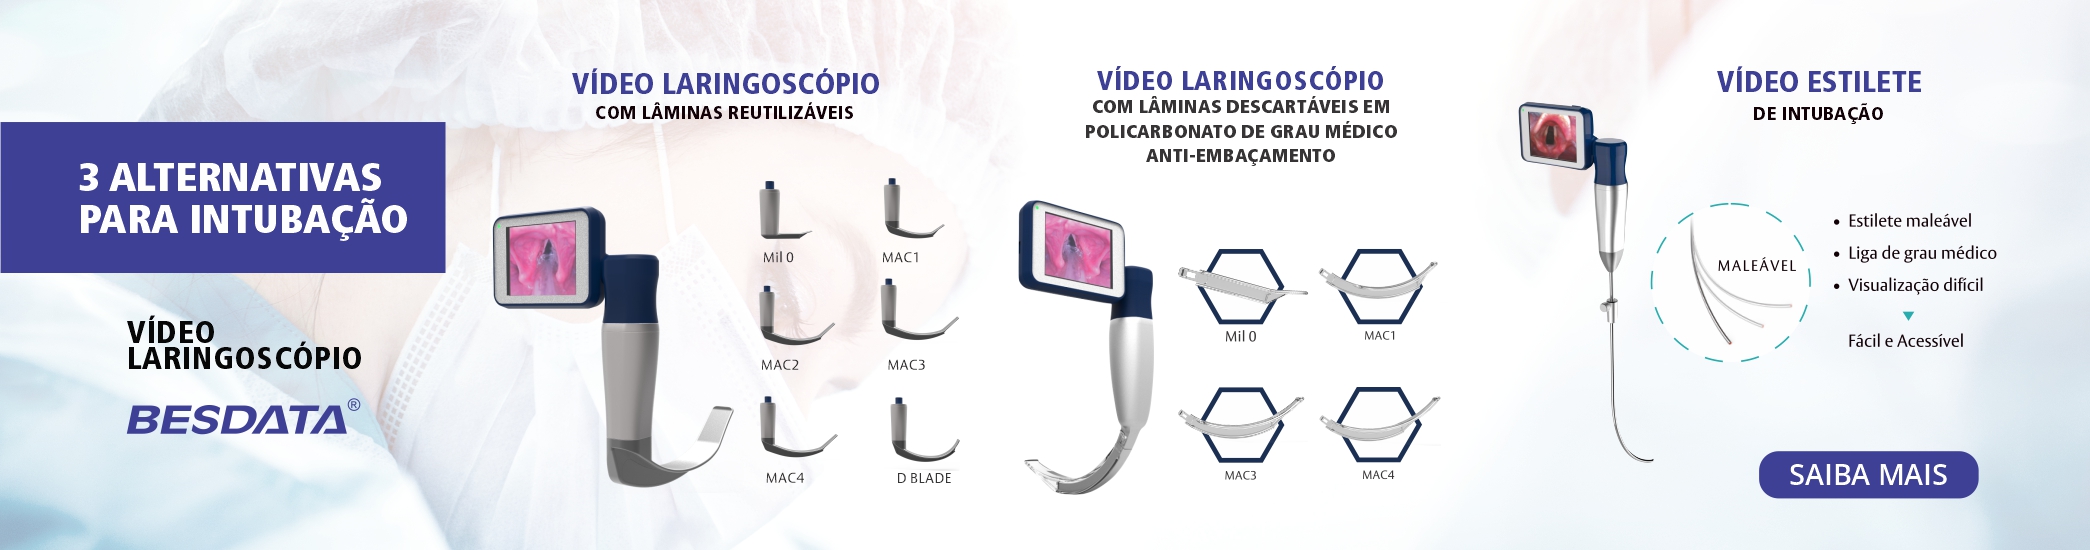 video laringoscópio besdata 